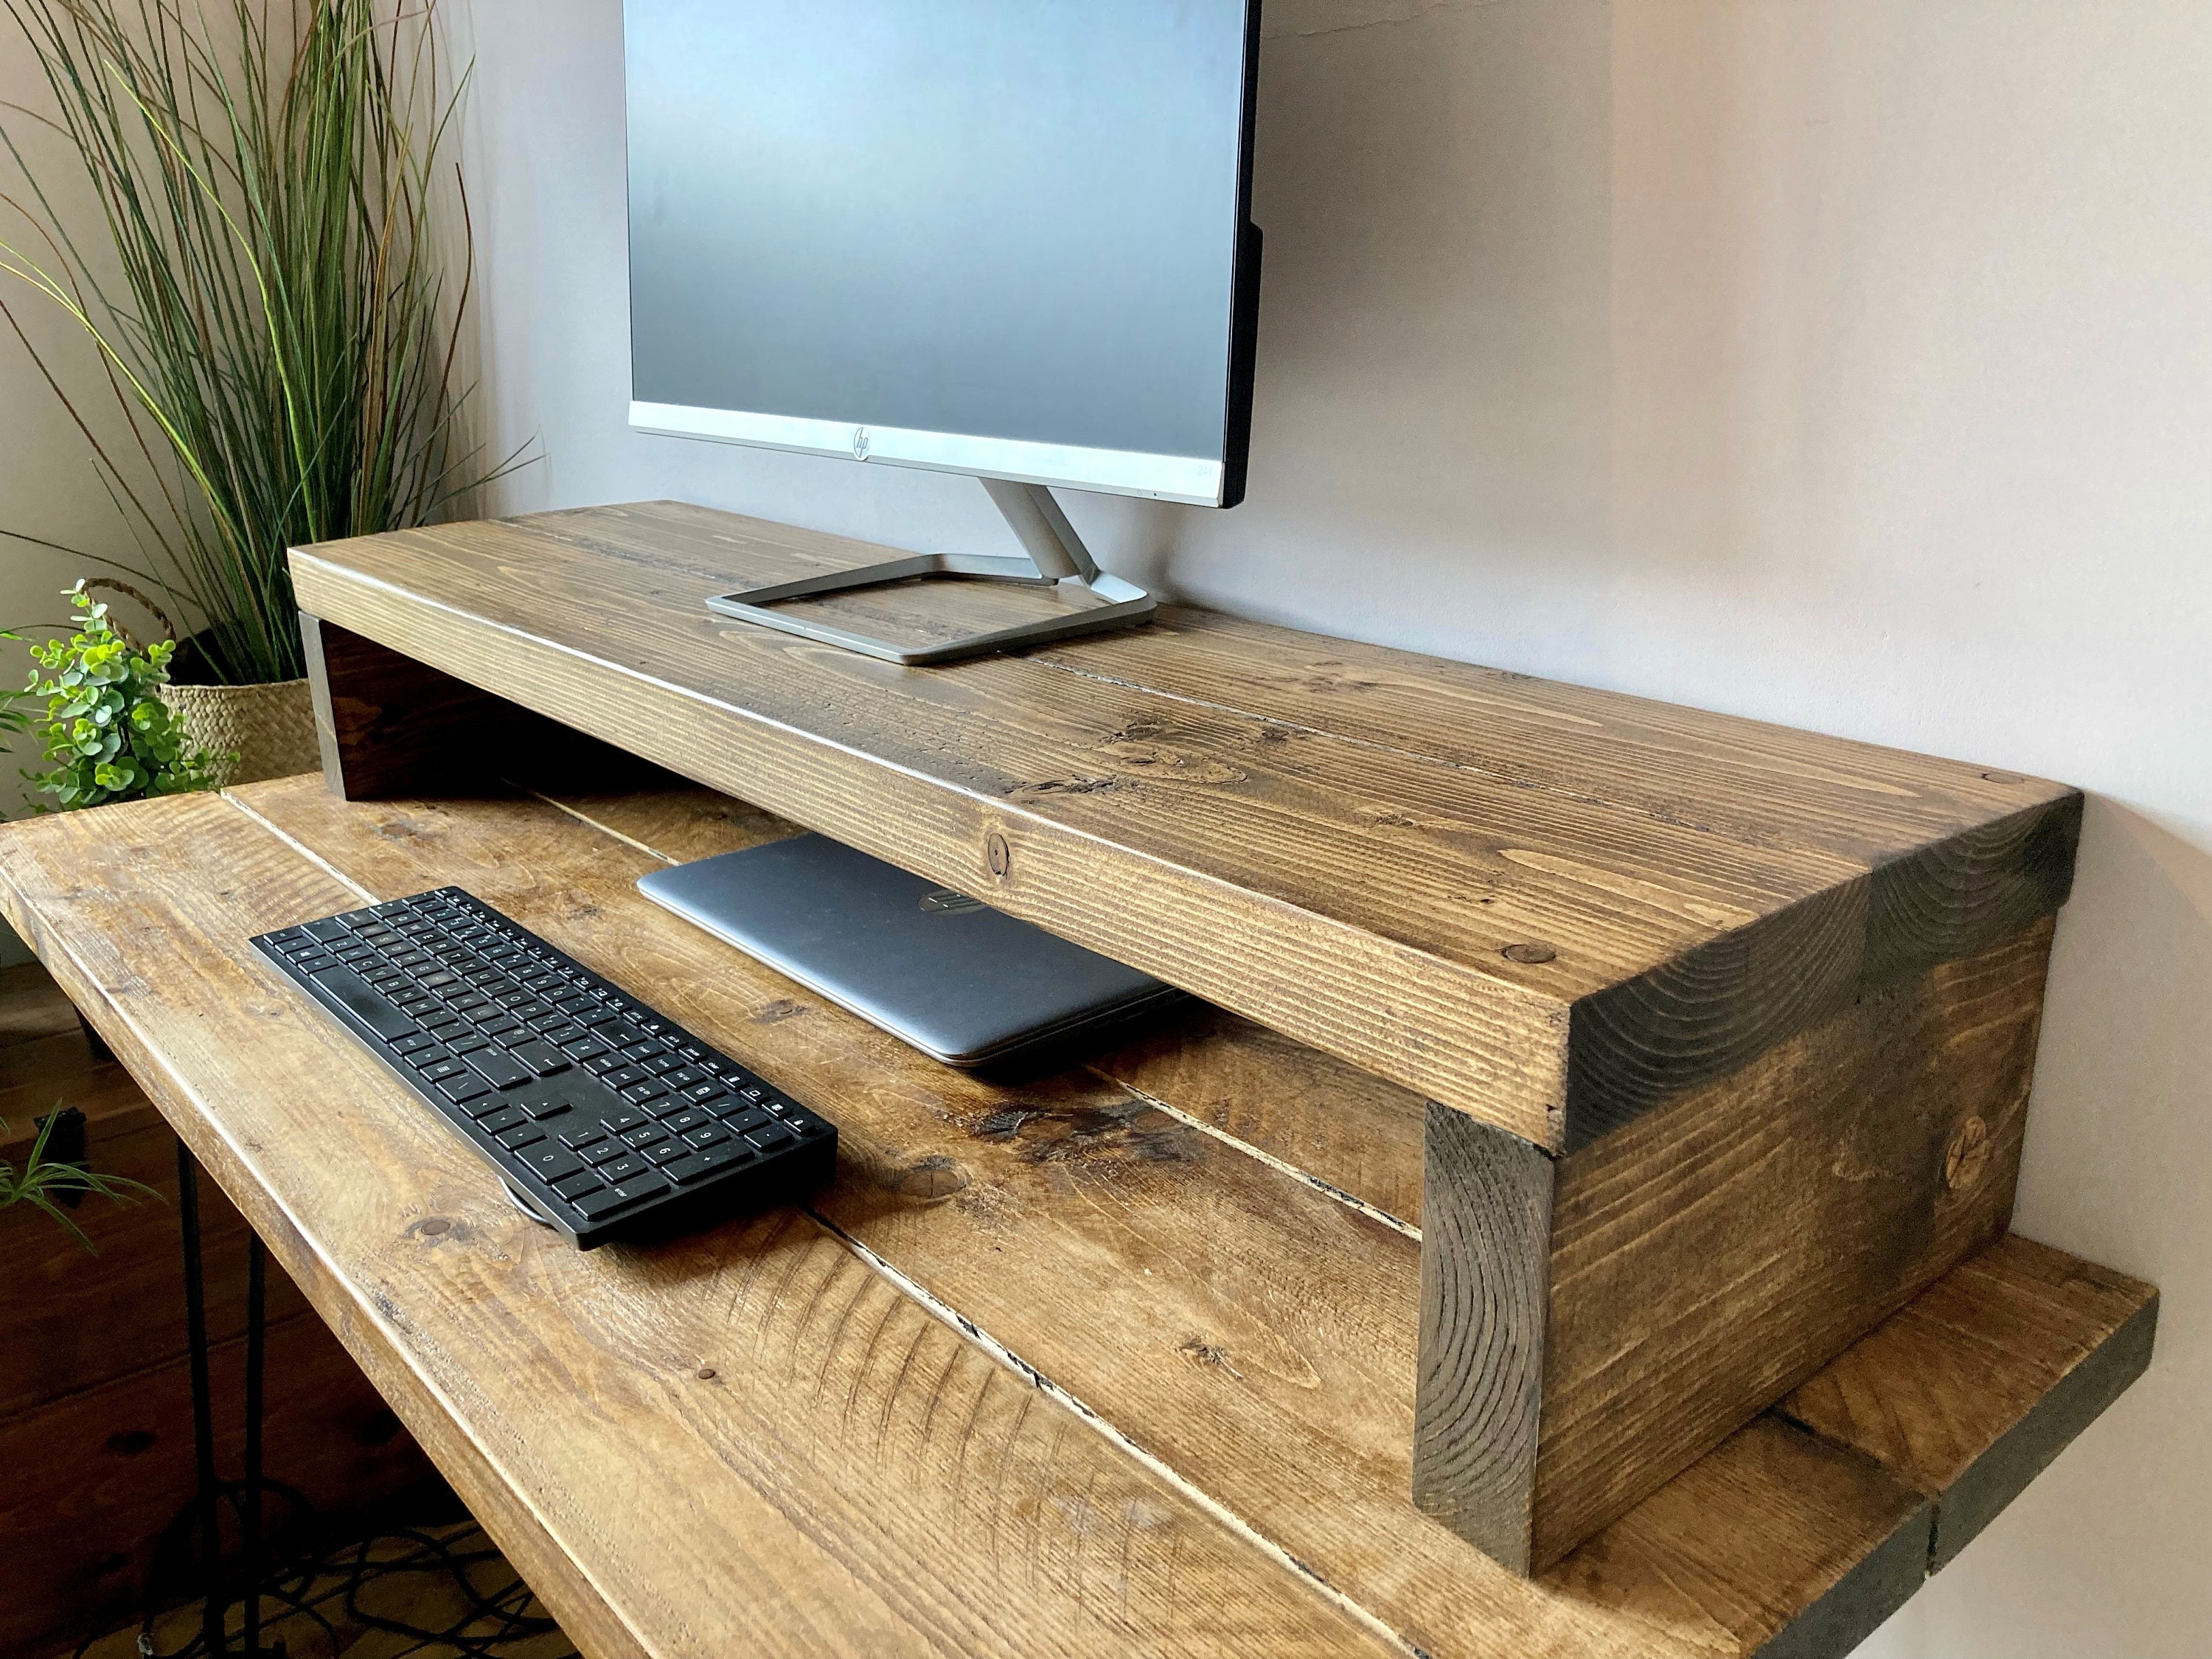 Office 2000 - Colonia - Soportes de madera para monitor Póut Eyed #soporte # monitor #madera #tecnologia #tecnología #office2000colonia